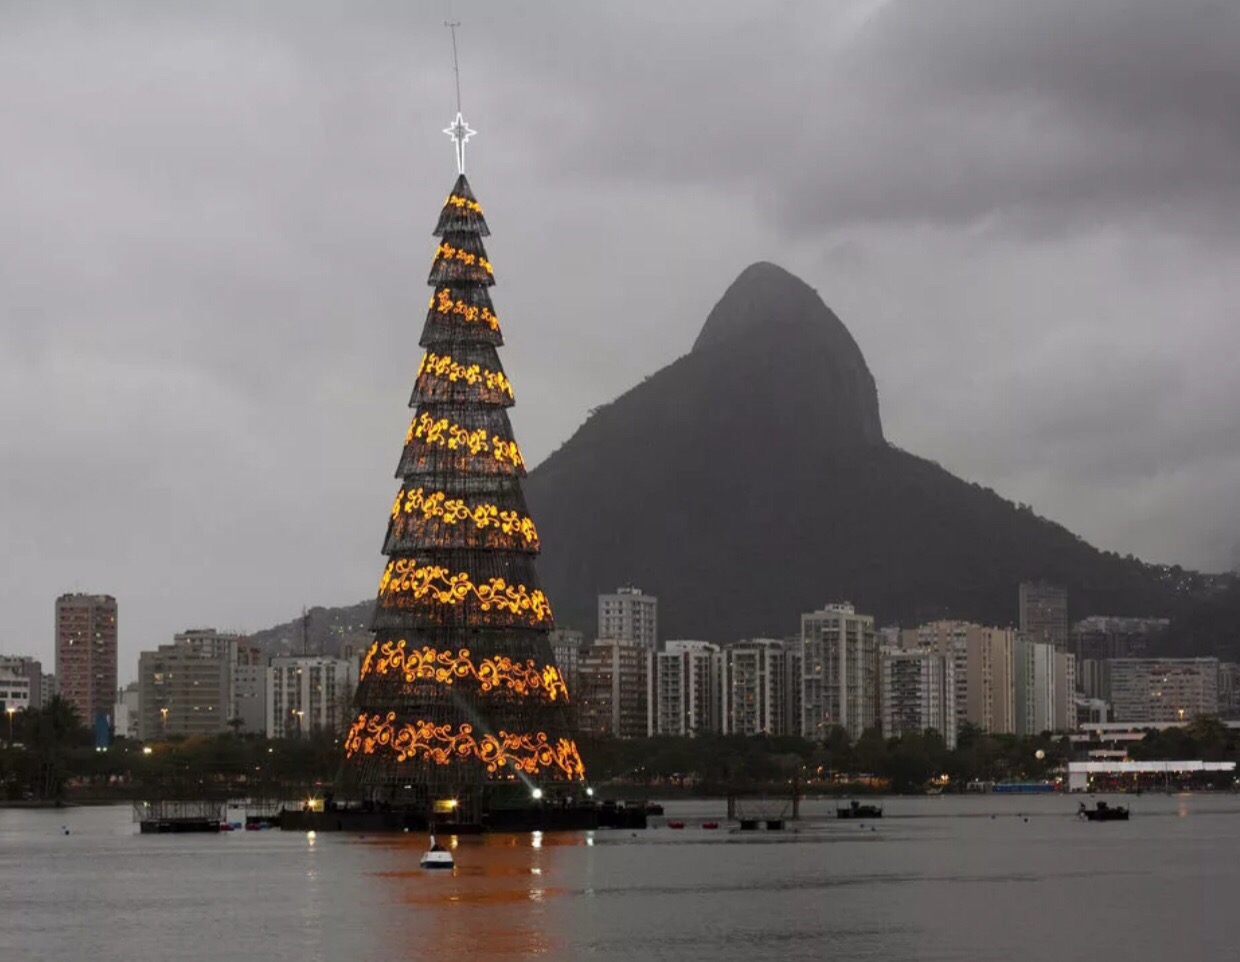 Громадные ели поднимались высоко. Плавучая елка в Рио де Жанейро. Рождественская елка в Рио де Жанейро. Рио-де-Жанейро, Бразилия елка. Новогодняя елка в Рио де Жанейро.